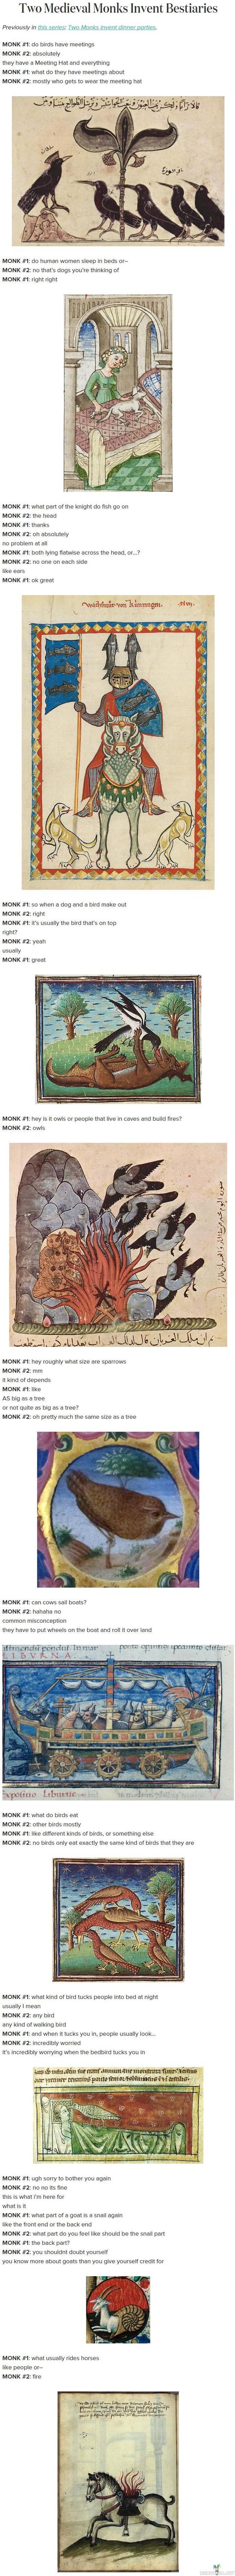 Keskiaikaista taidetta - Munkit ei vissiin käynyt ulkona kovin usein.